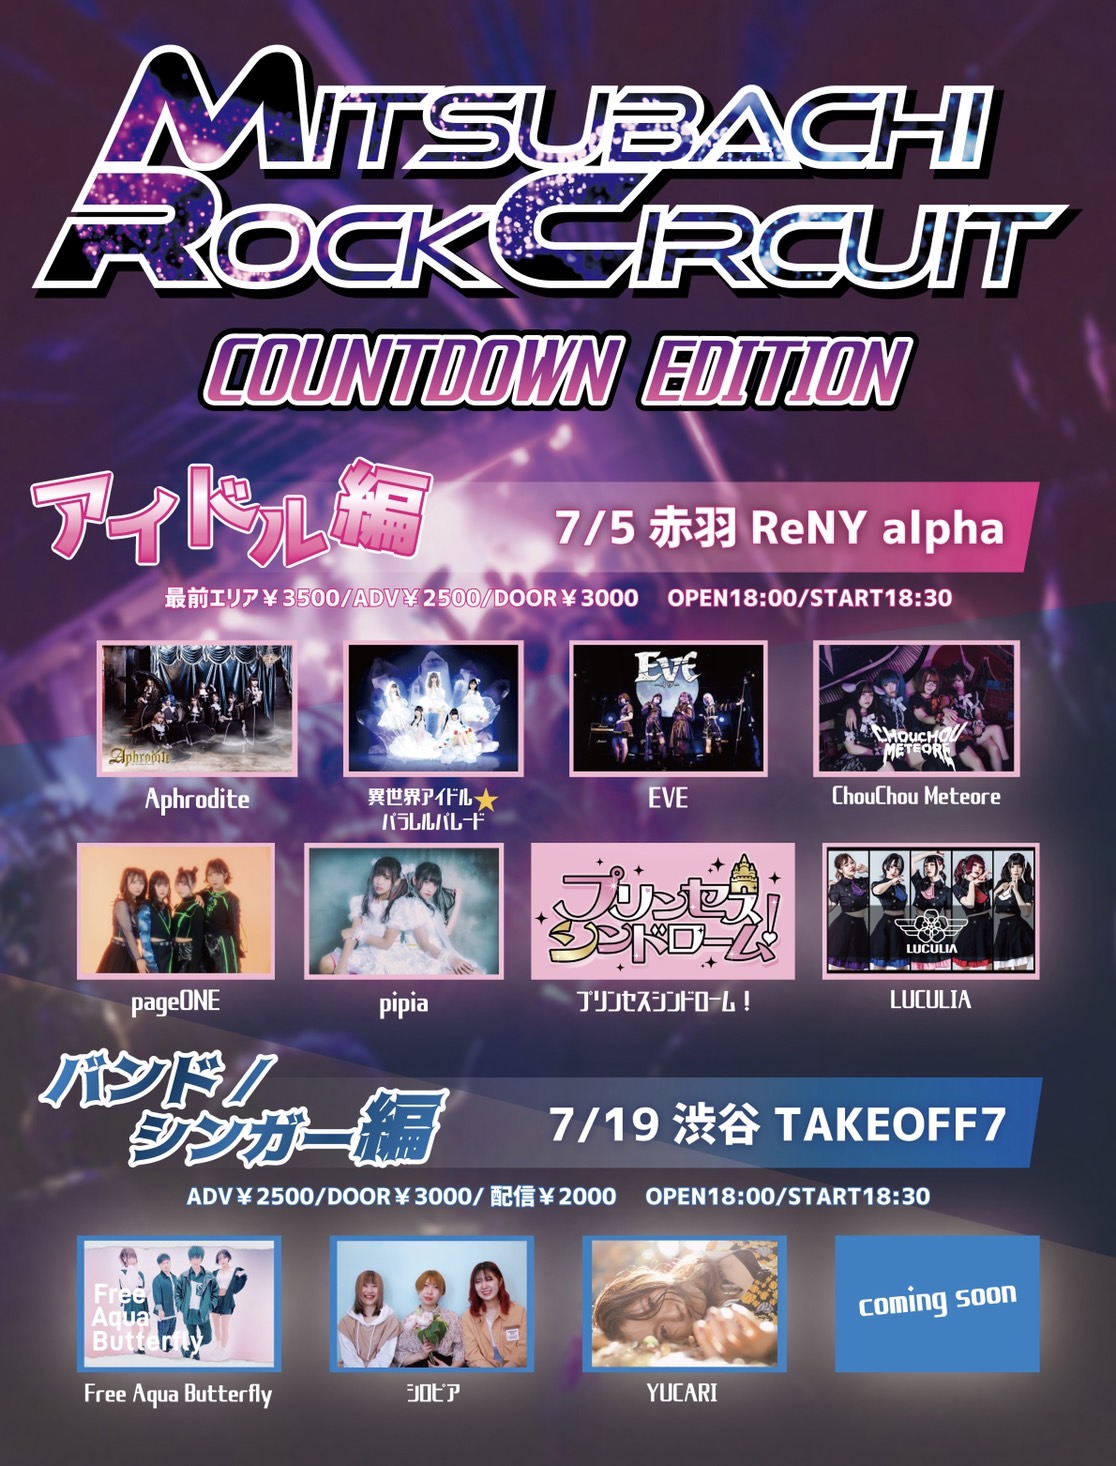 「MITSUBACHI ROCK CIRCUIT カウントダウンエディション」